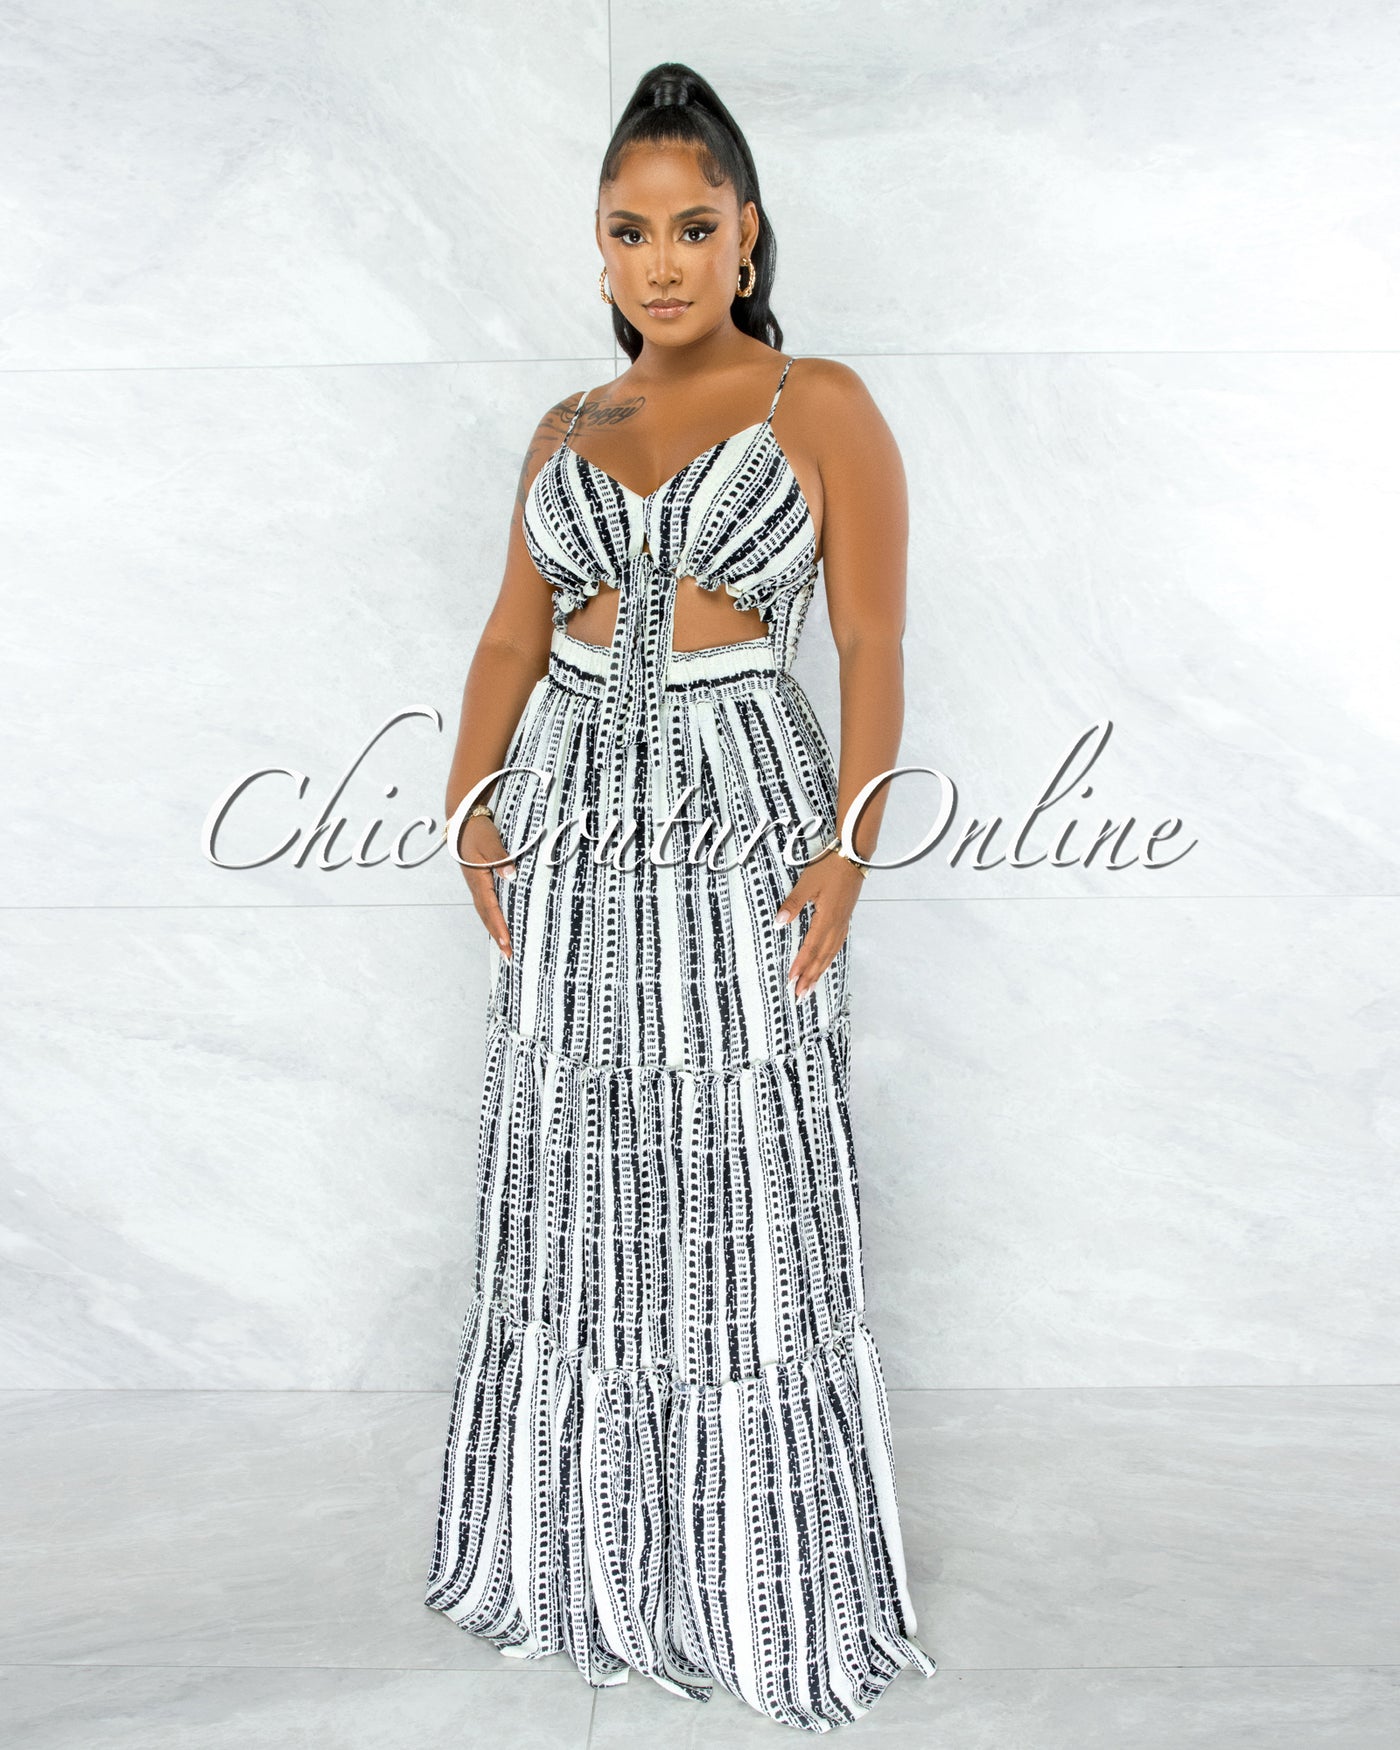 Ohane Black White Print Cut-Out Maxi Dress